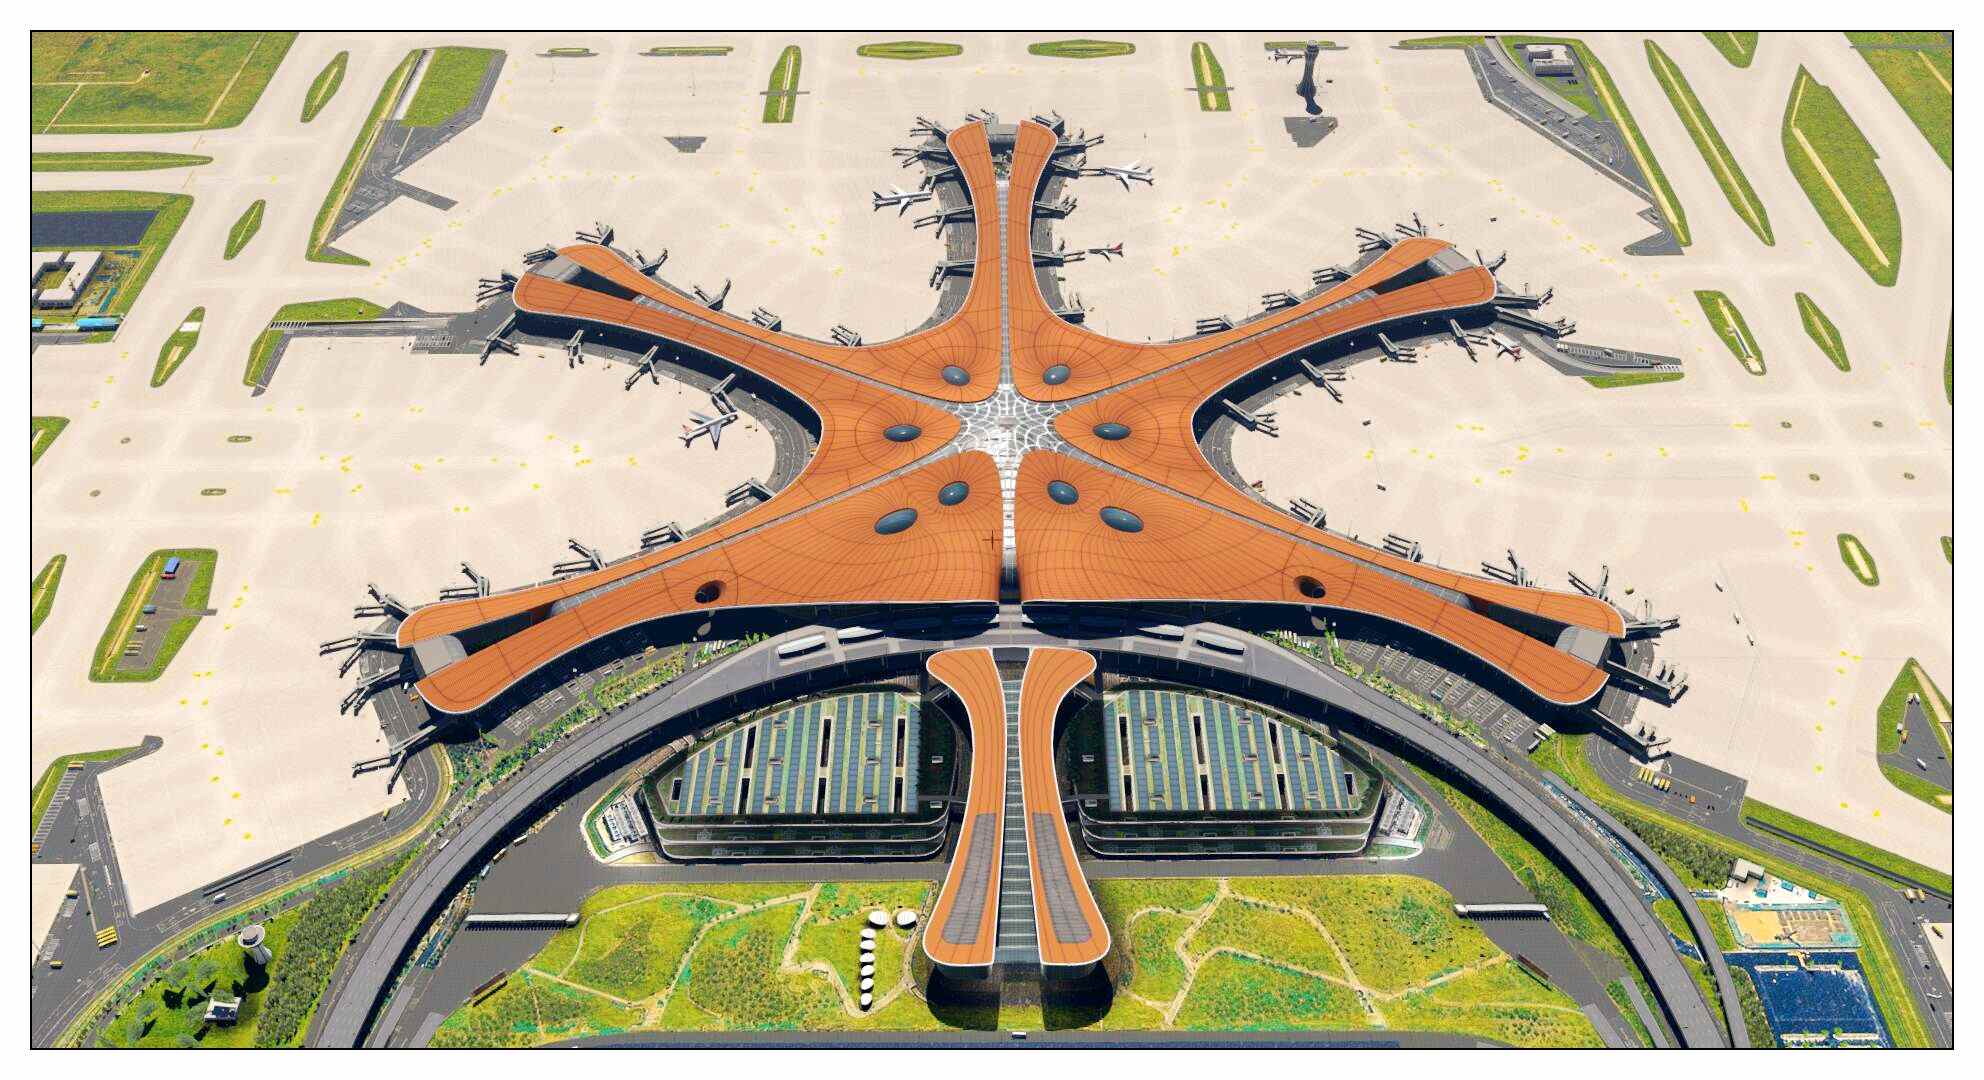 【X-Plane】ZBAD北京大兴国际机场-正式发布-379 